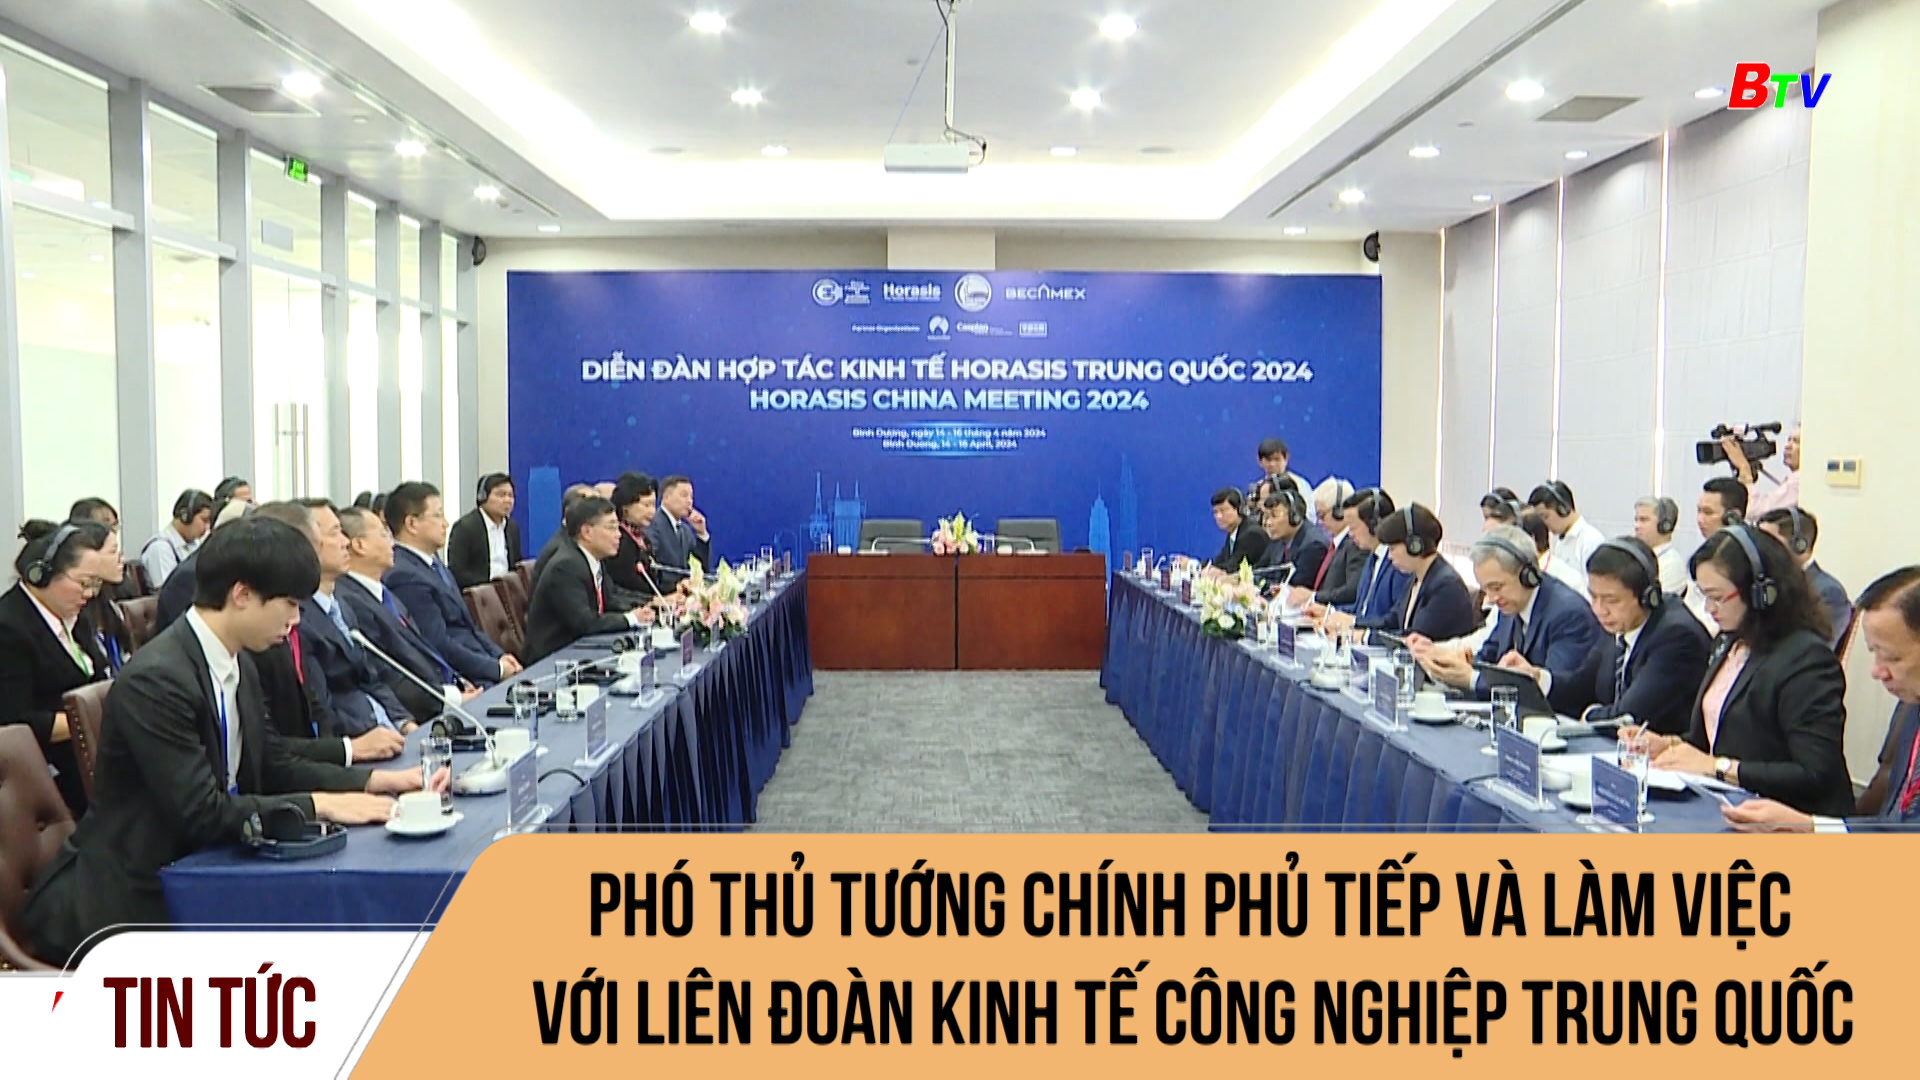 Phó Thủ tướng Chính phủ tiếp và làm việc với liên đoàn kinh tế công nghiệp Trung Quốc	